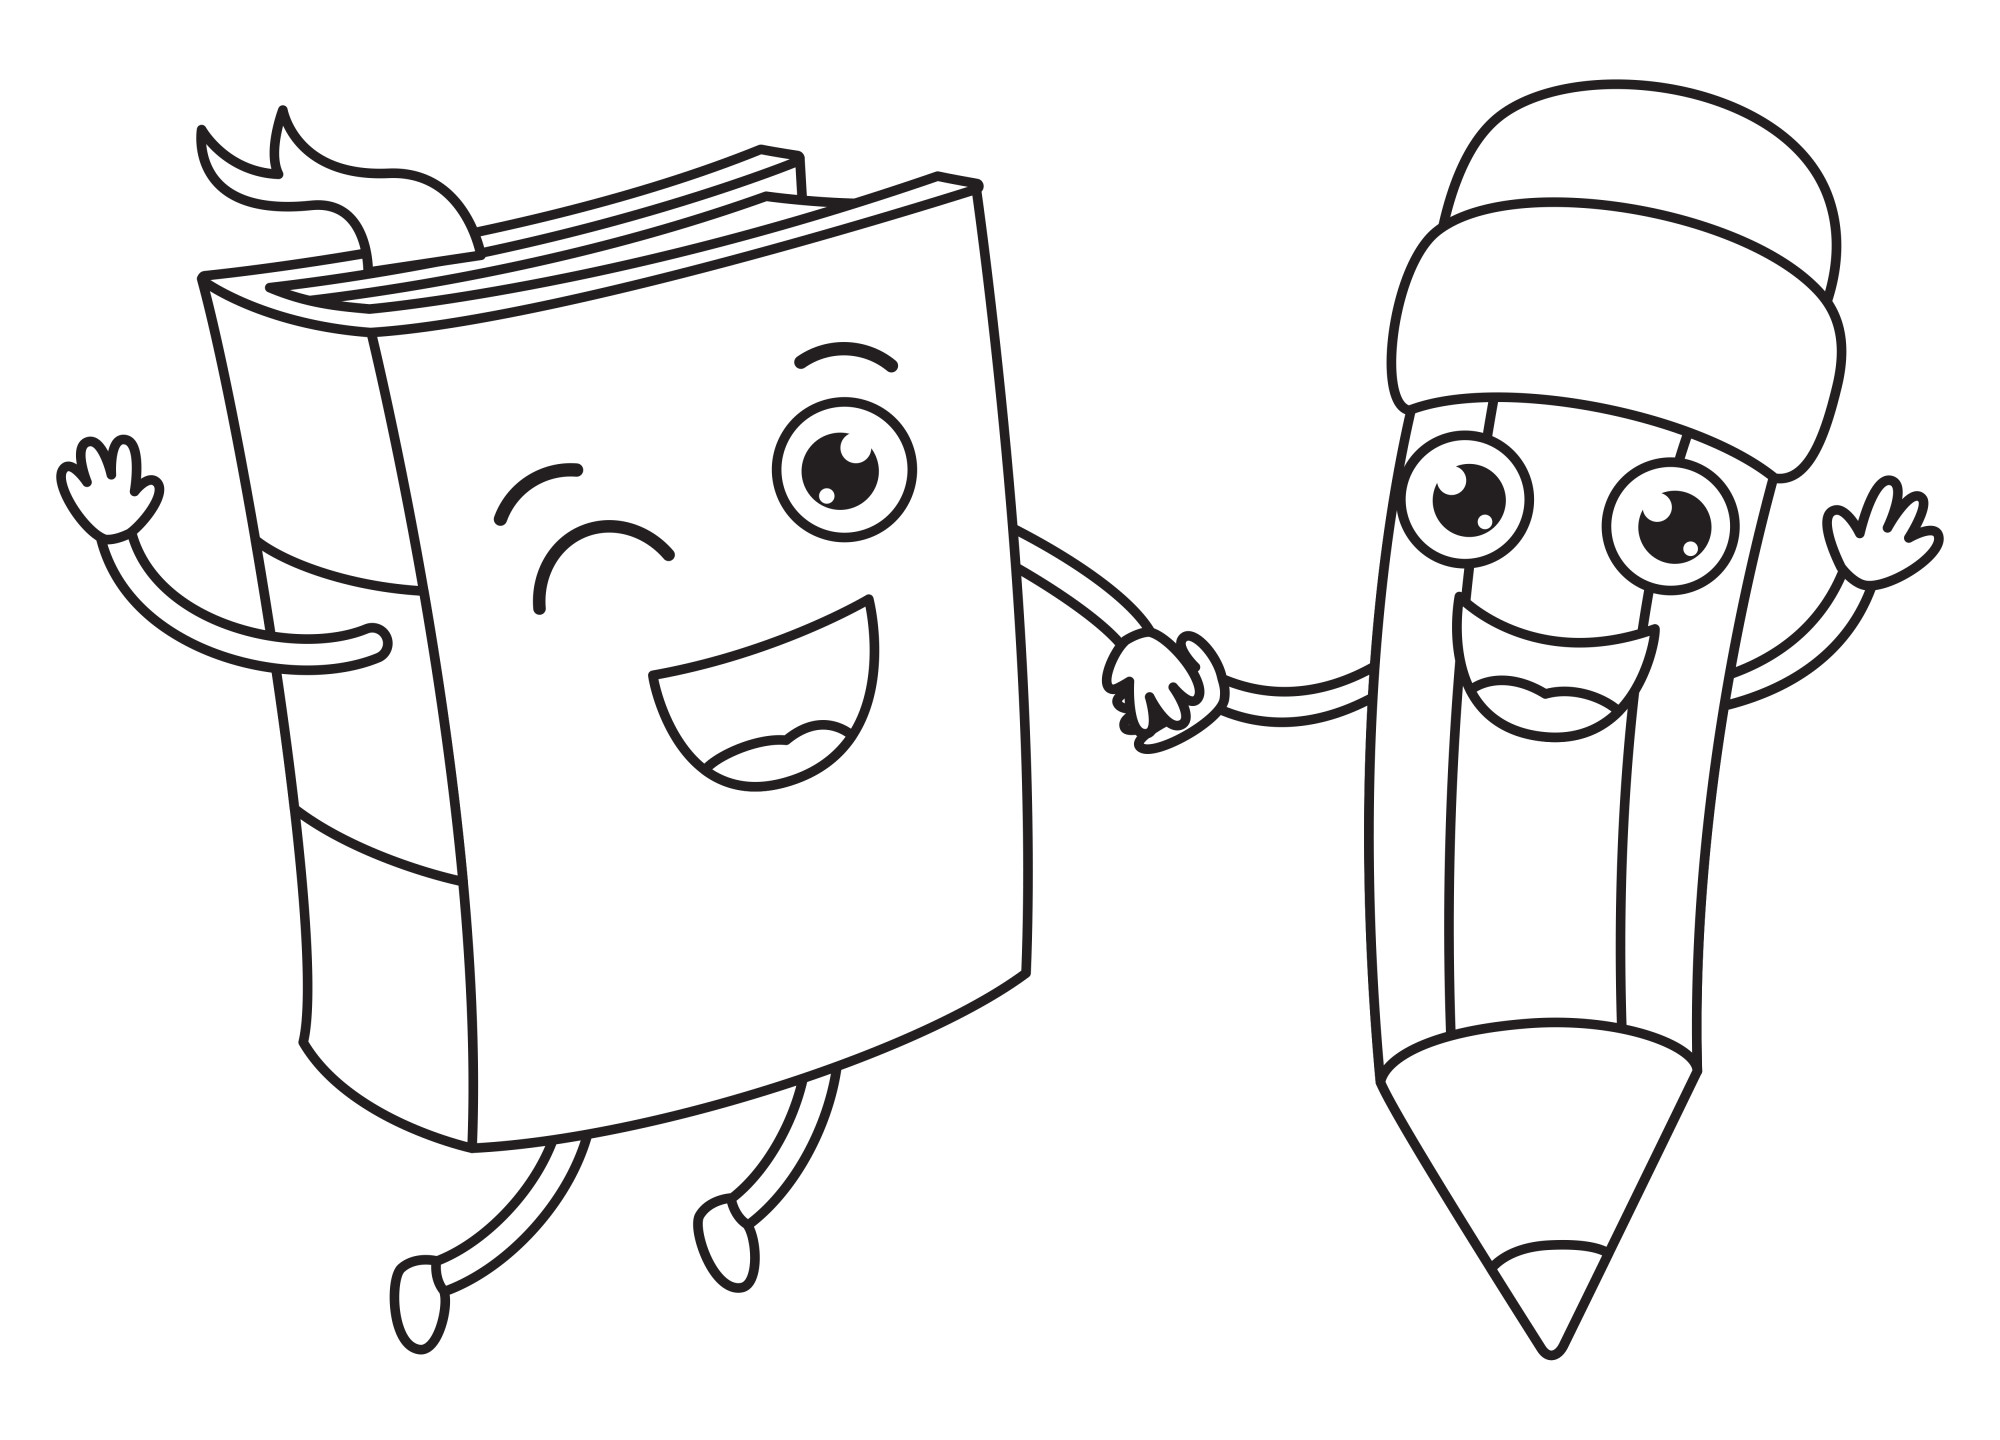 Раскраска для детей: игрушечные книжка и карандаш с лицами